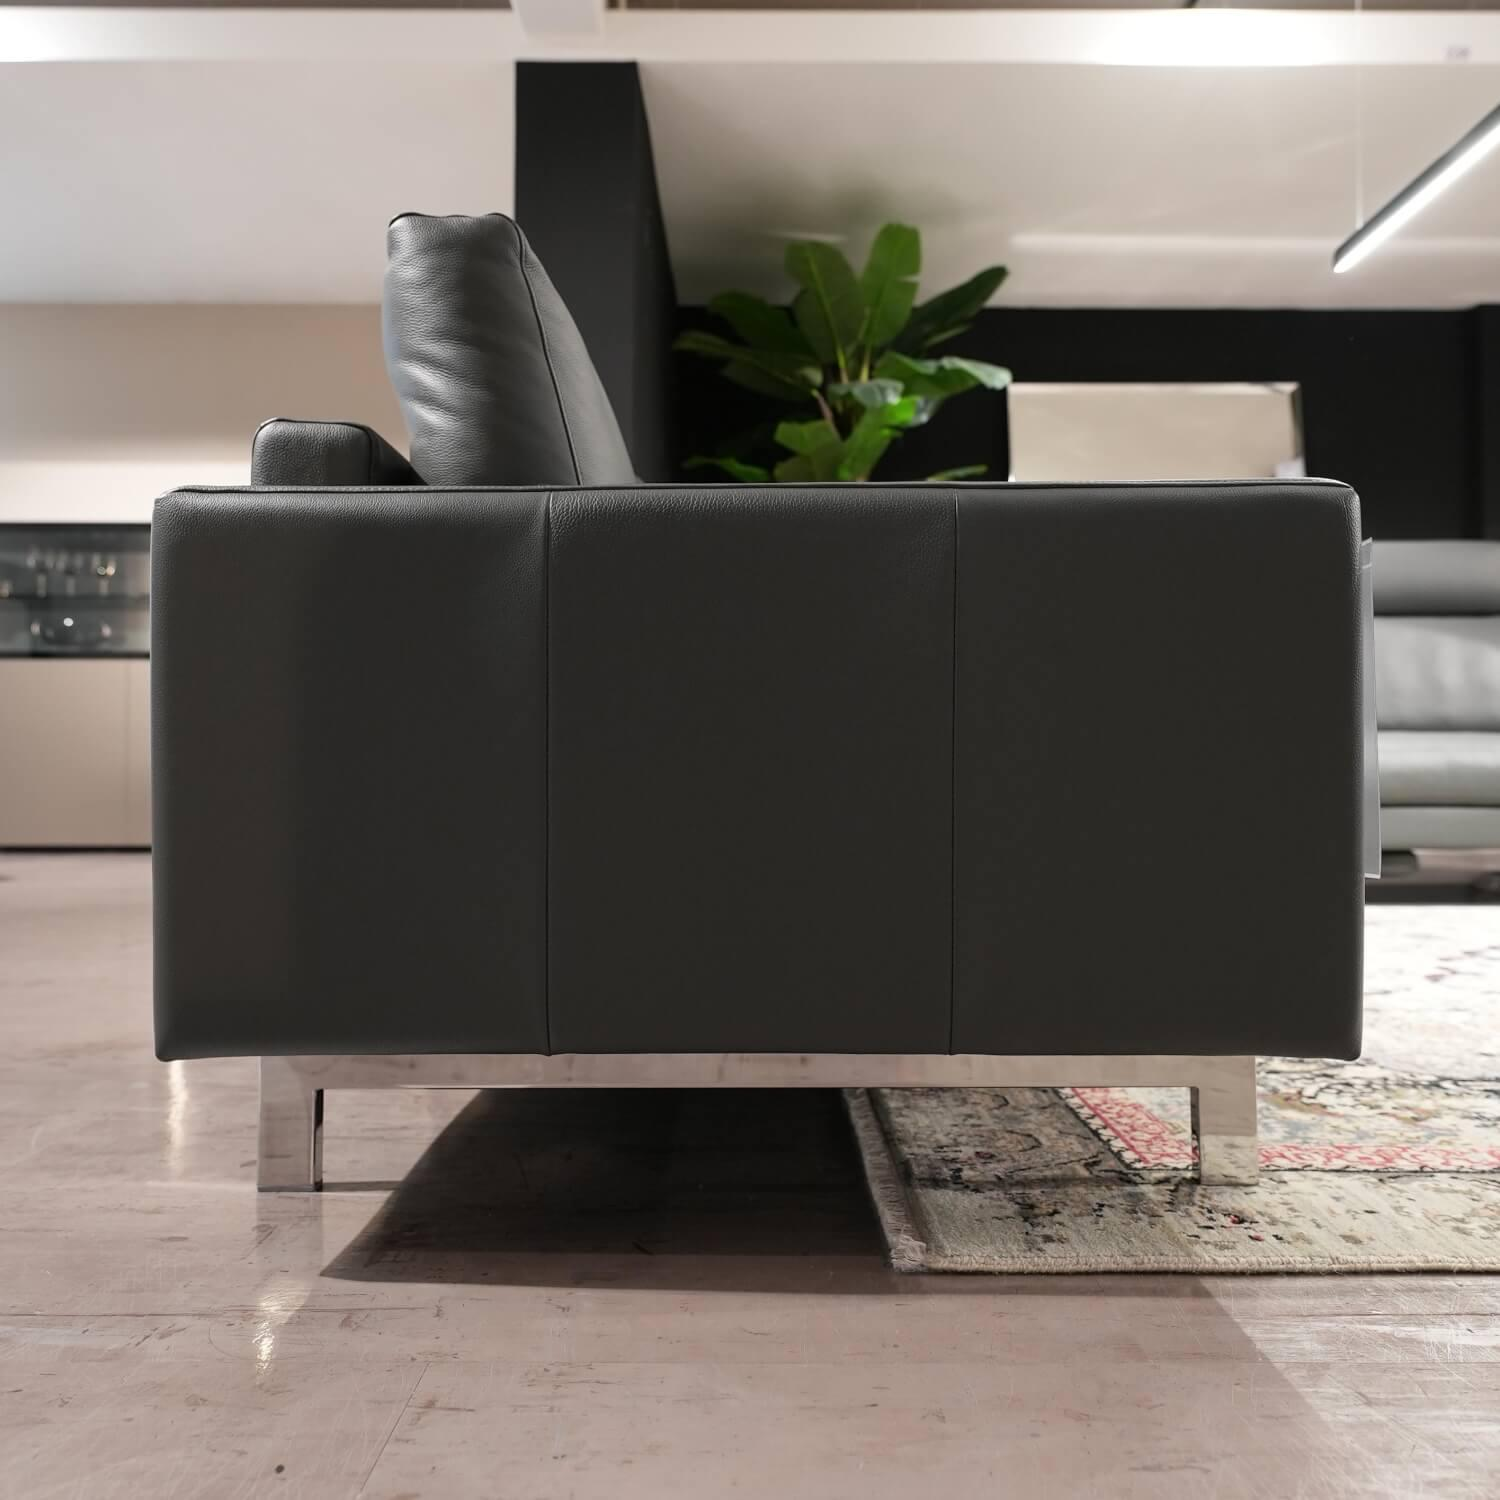 Sofa VIDA 168 Bezug Leder 60.508 Grau Comfort Lounge Fuß Spange Glanzchrom